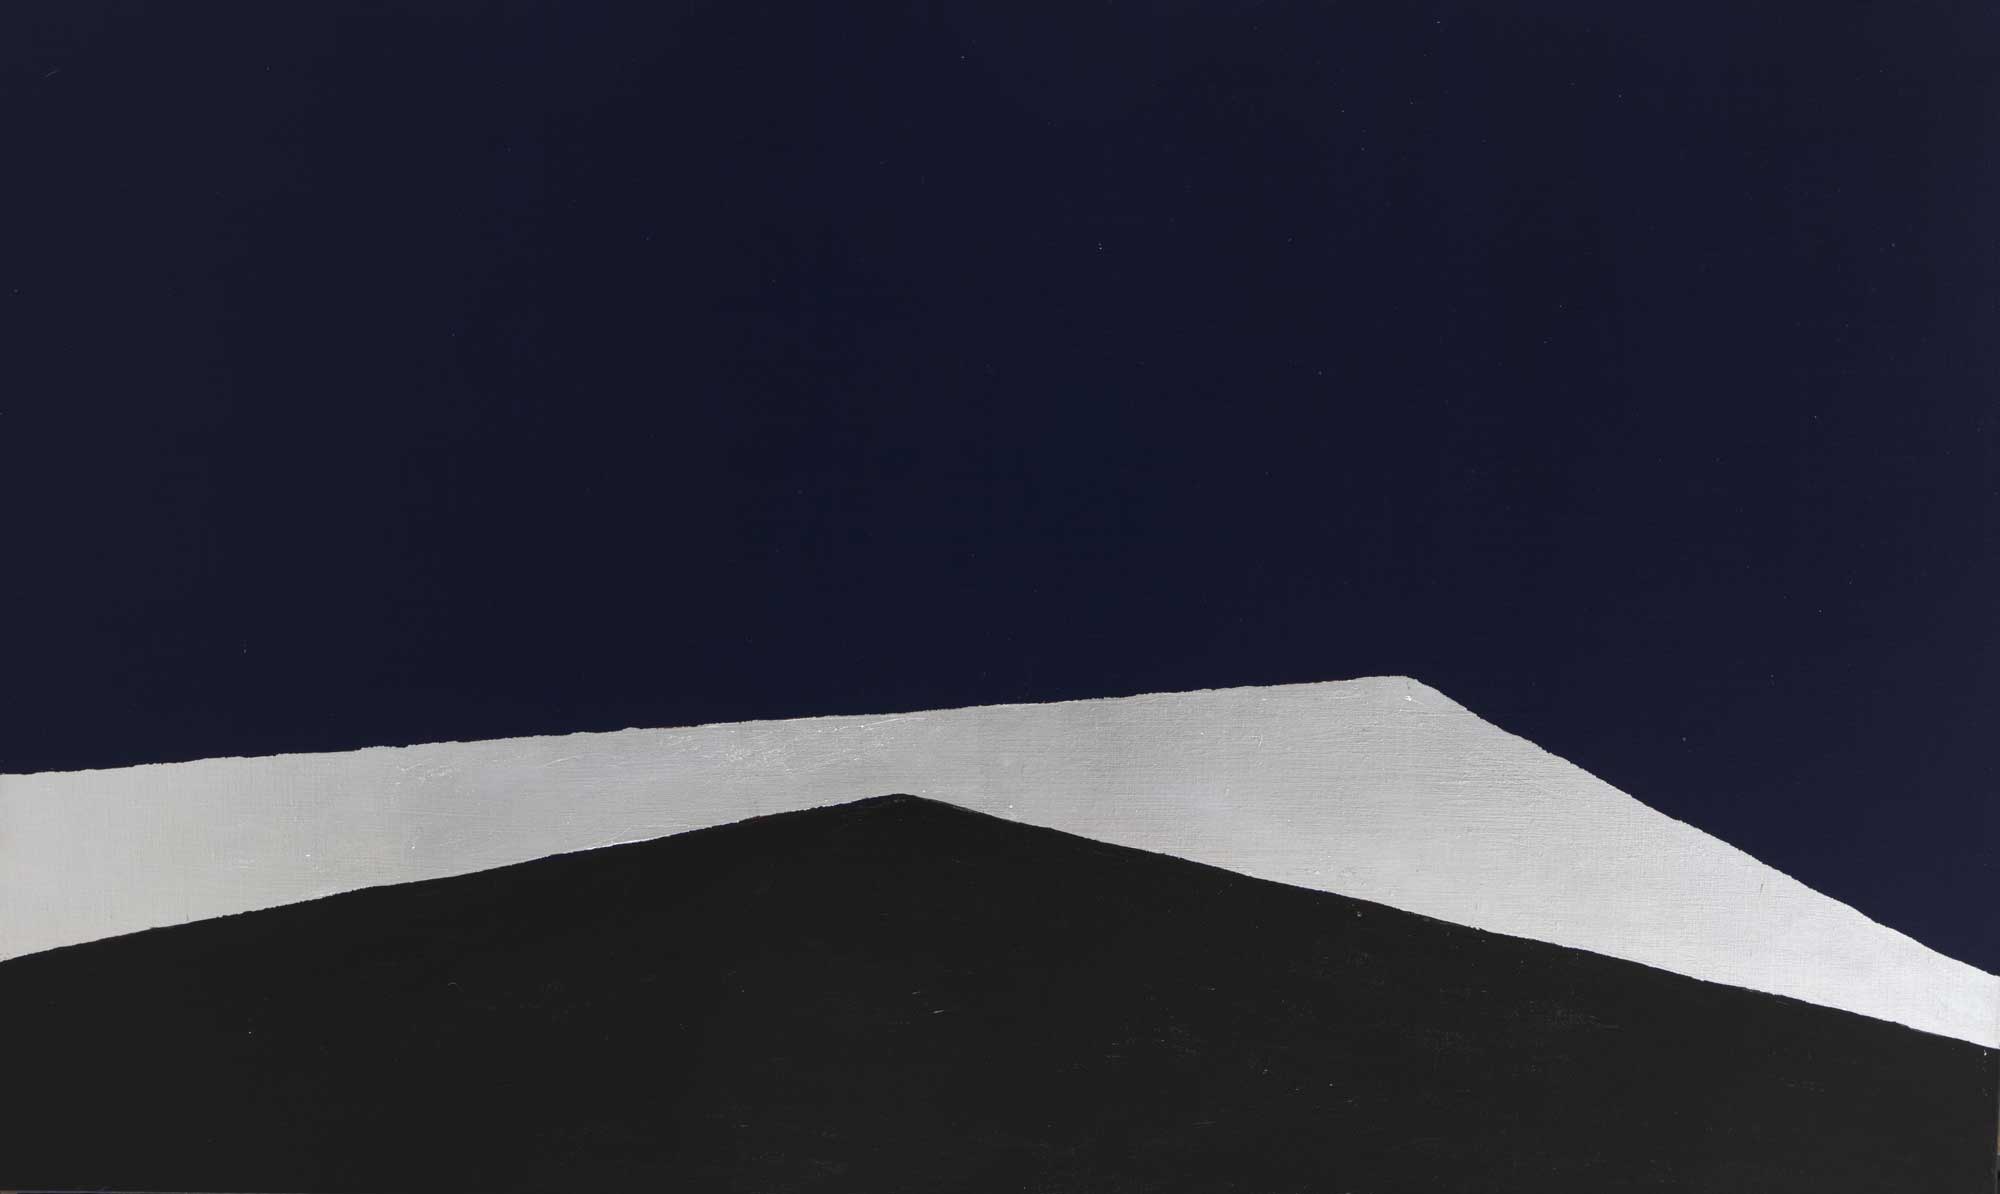 Anna-Eva Bergman, N°19-1981 Double horizon, 1981, acrylique et feuille de métal sur toile, 97 x 162 cm